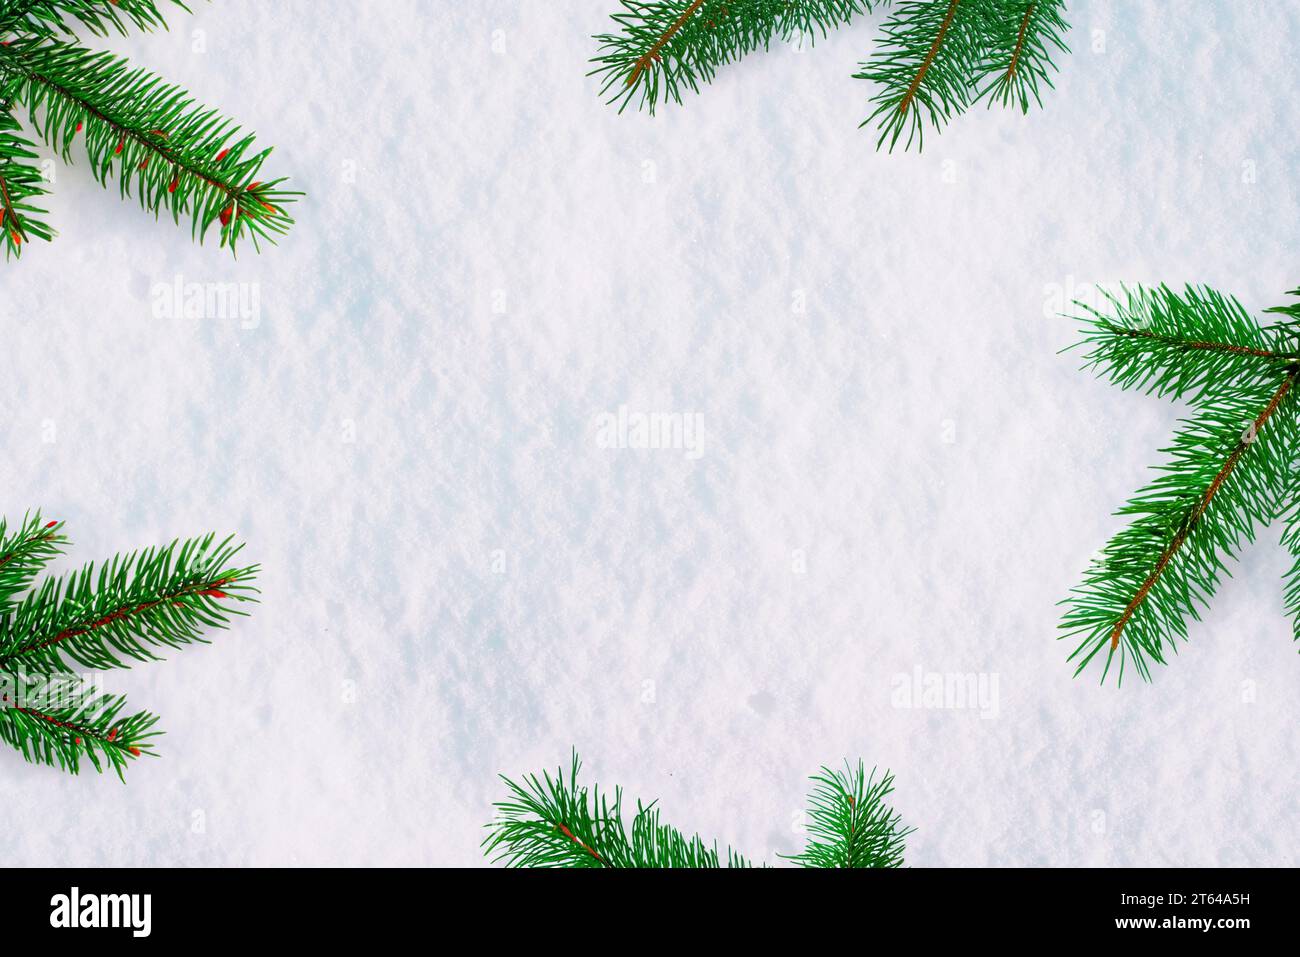 Schnee bedeckt mit Weihnachtsbaumzweigen und freier Platz dazwischen für Kopien oder Produktwerbung. Festliche Winterkulisse Stockfoto